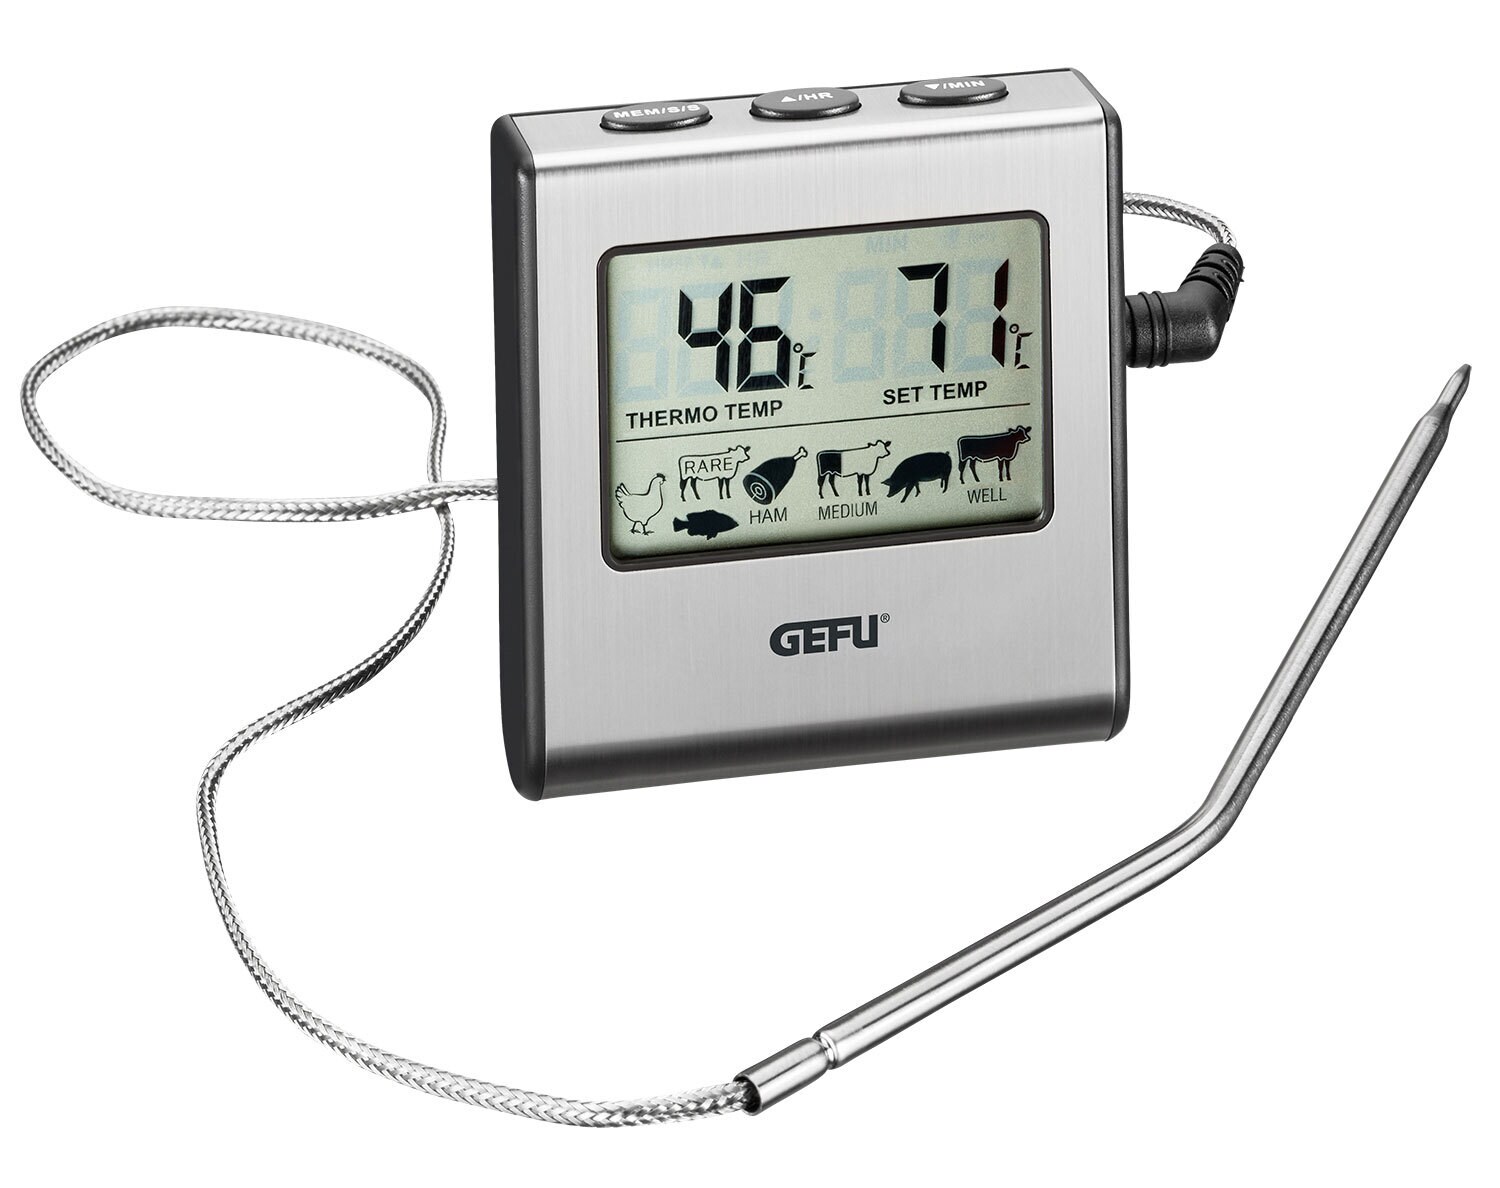 GEFU Digital-Bratenthermometer TEMPERE schwarz/silberfarbig